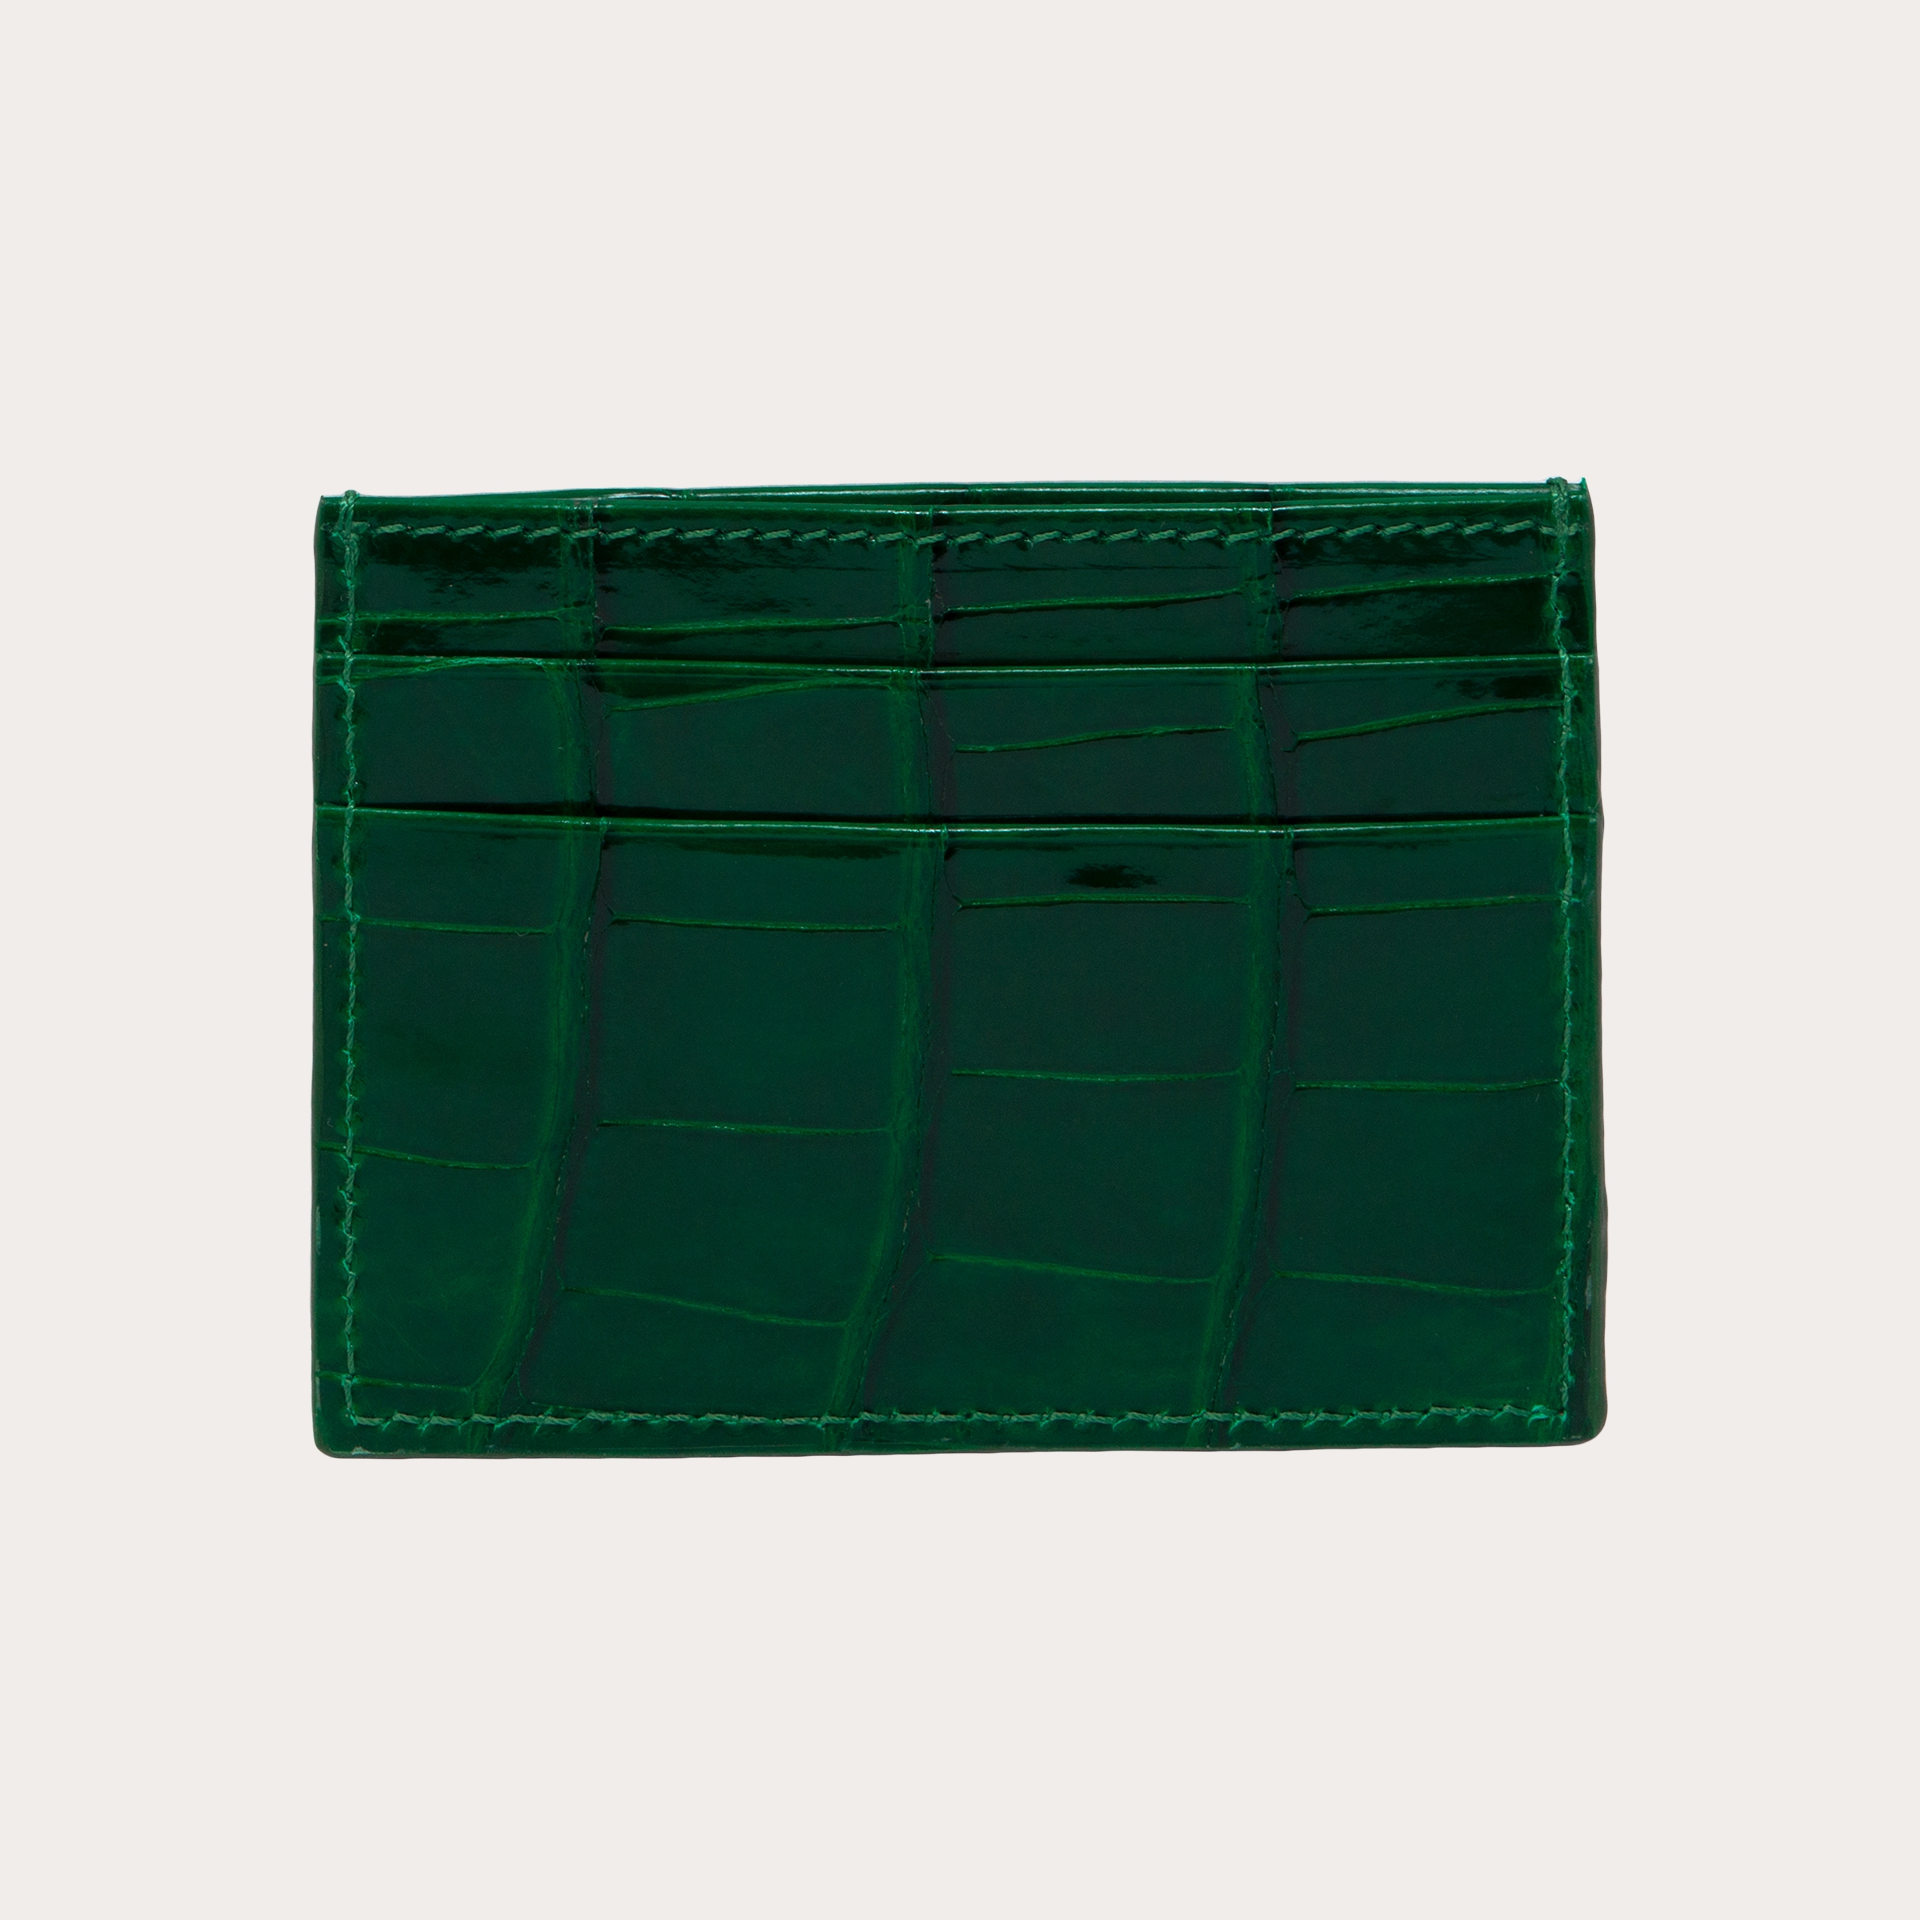 Essential leather key holder - Alligator (black, blue, green